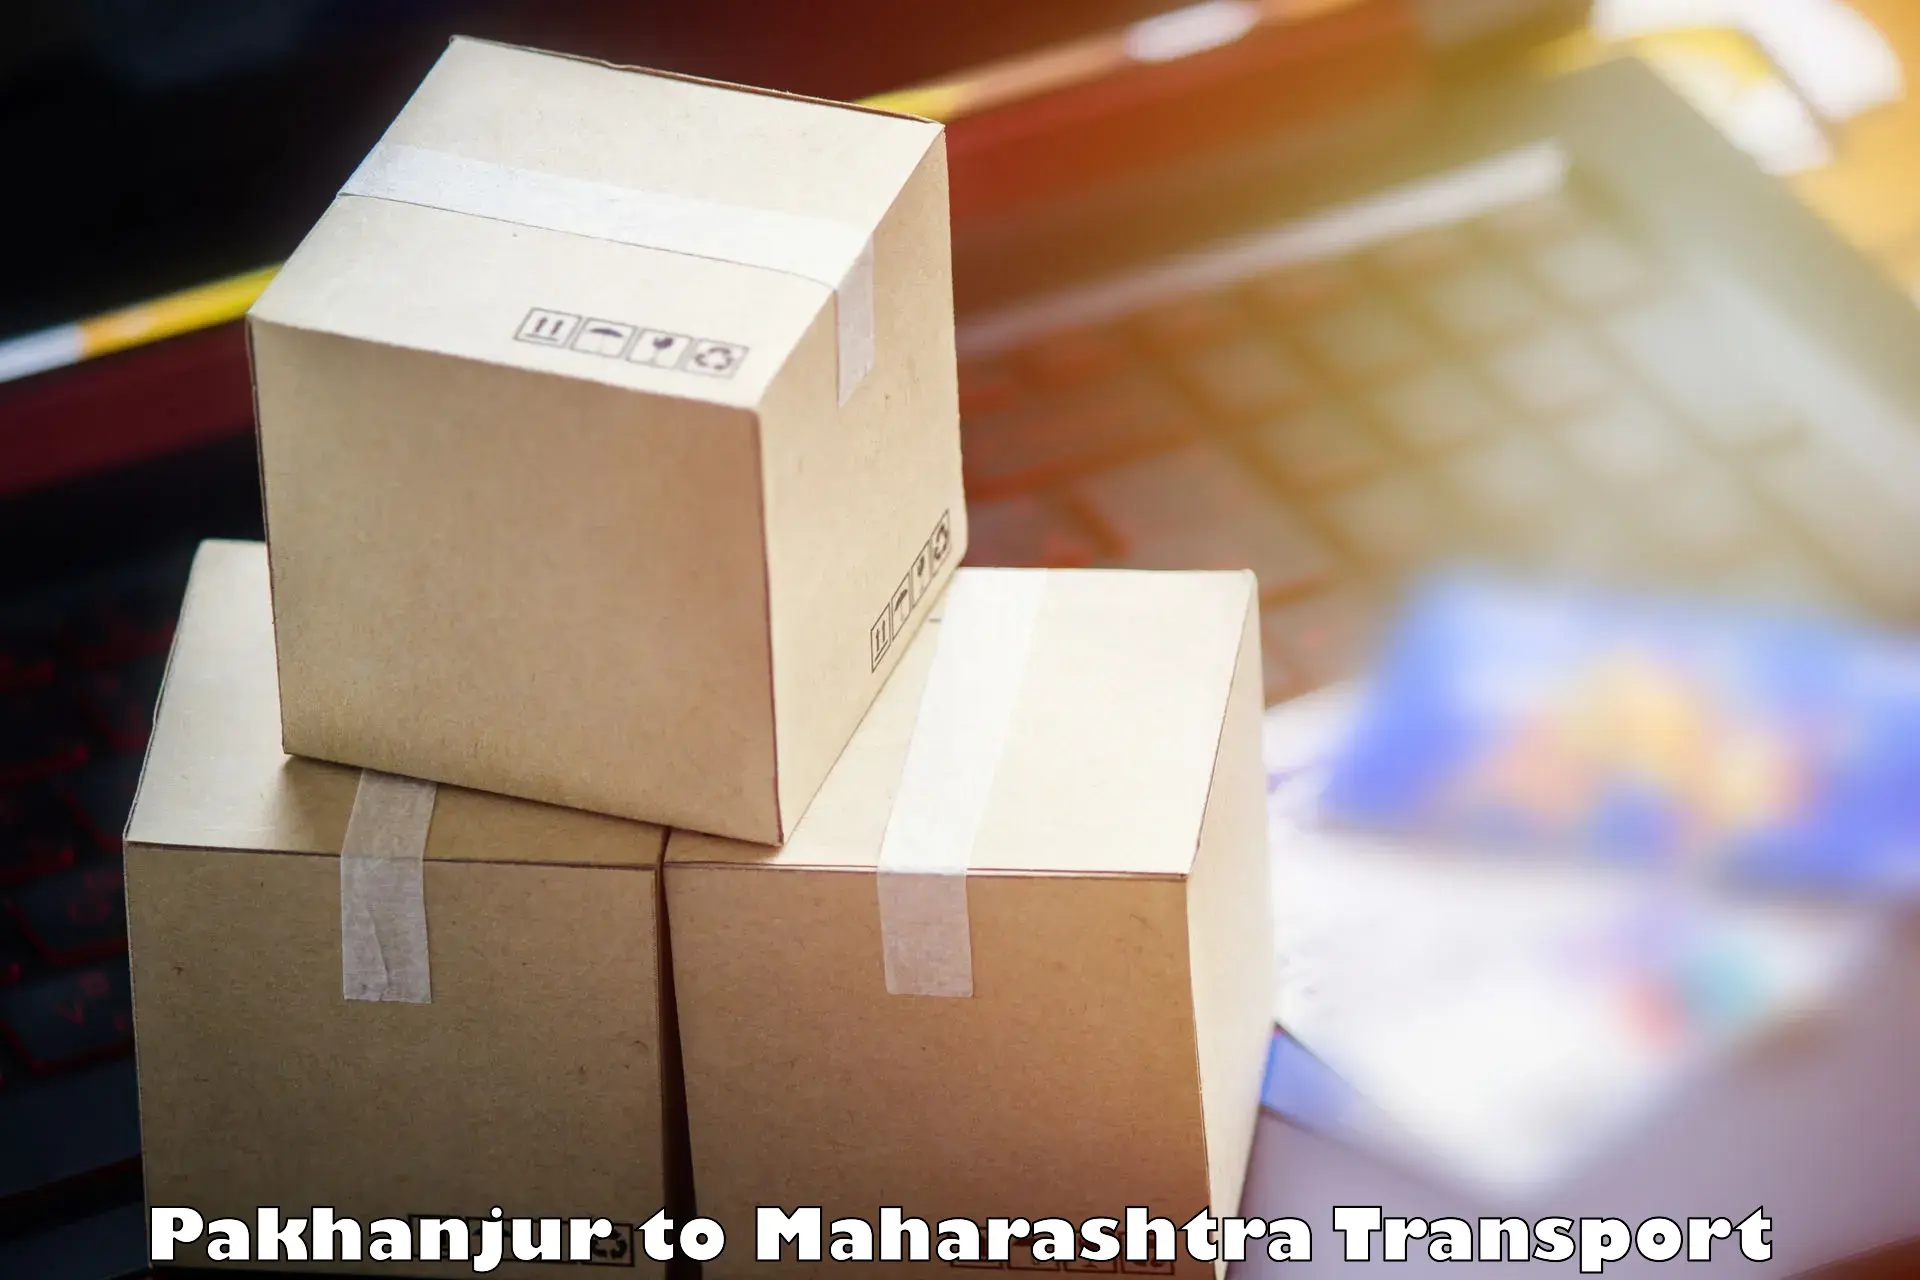 Cargo transport services Pakhanjur to Karjat